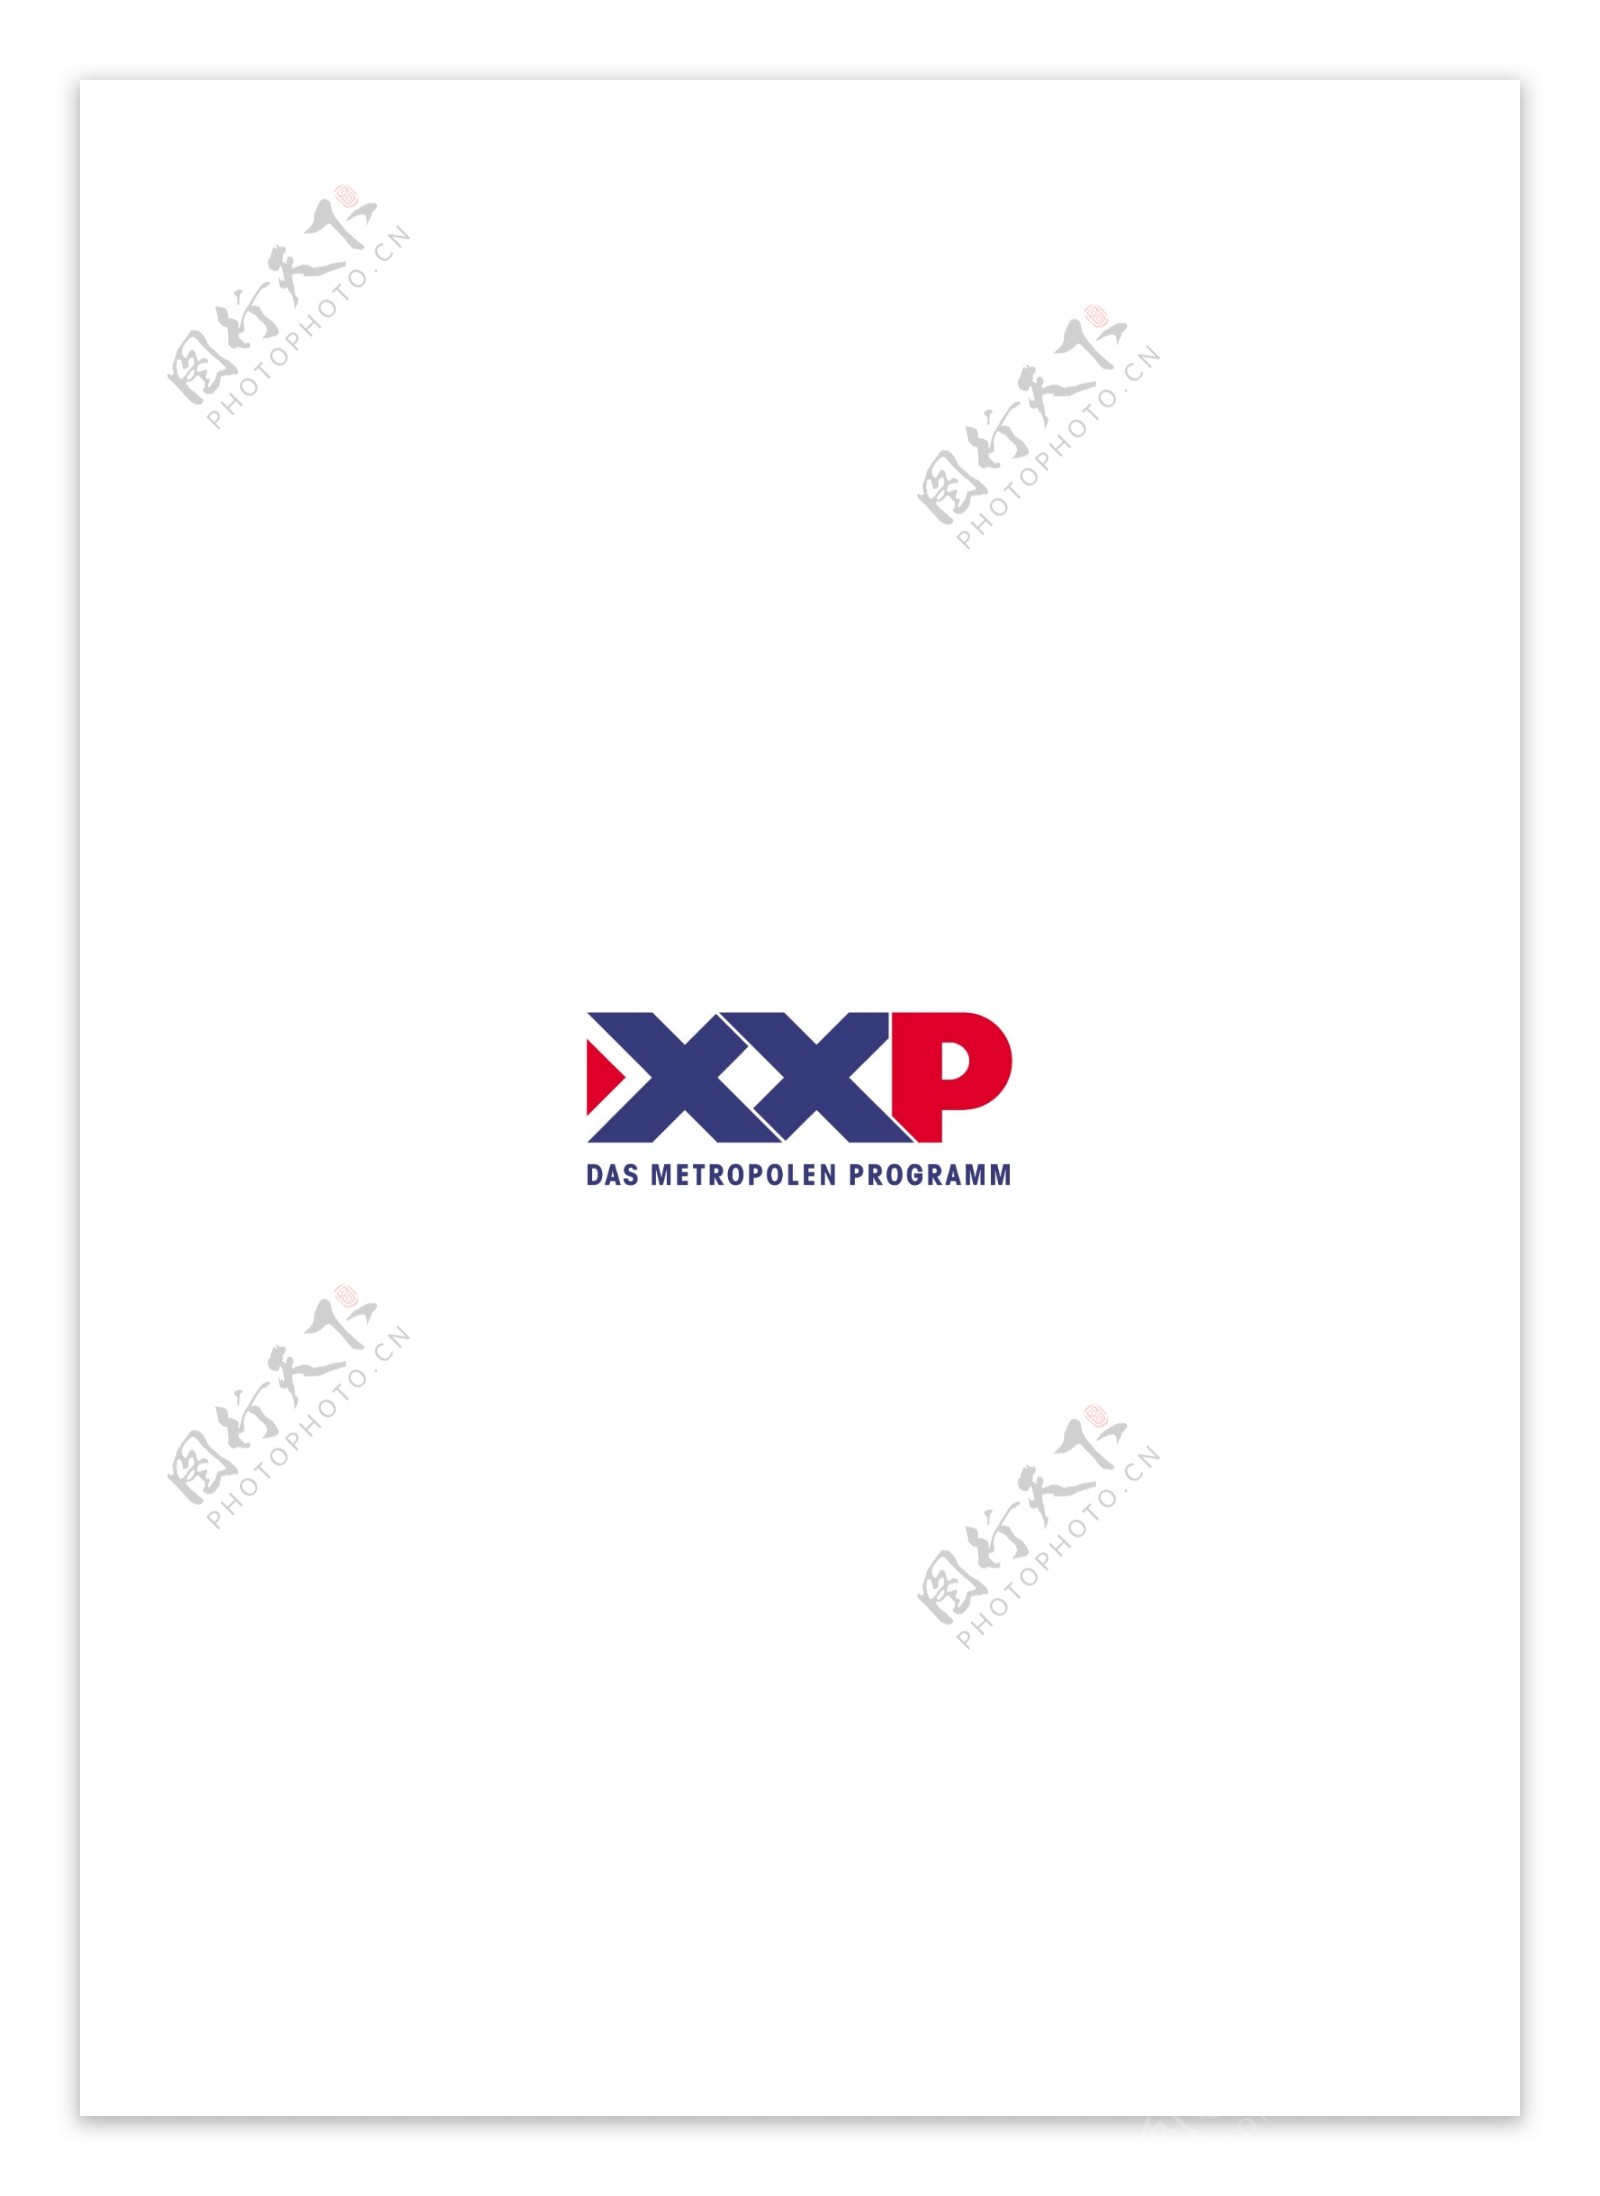 XXPlogo设计欣赏XXP电视媒体标志下载标志设计欣赏